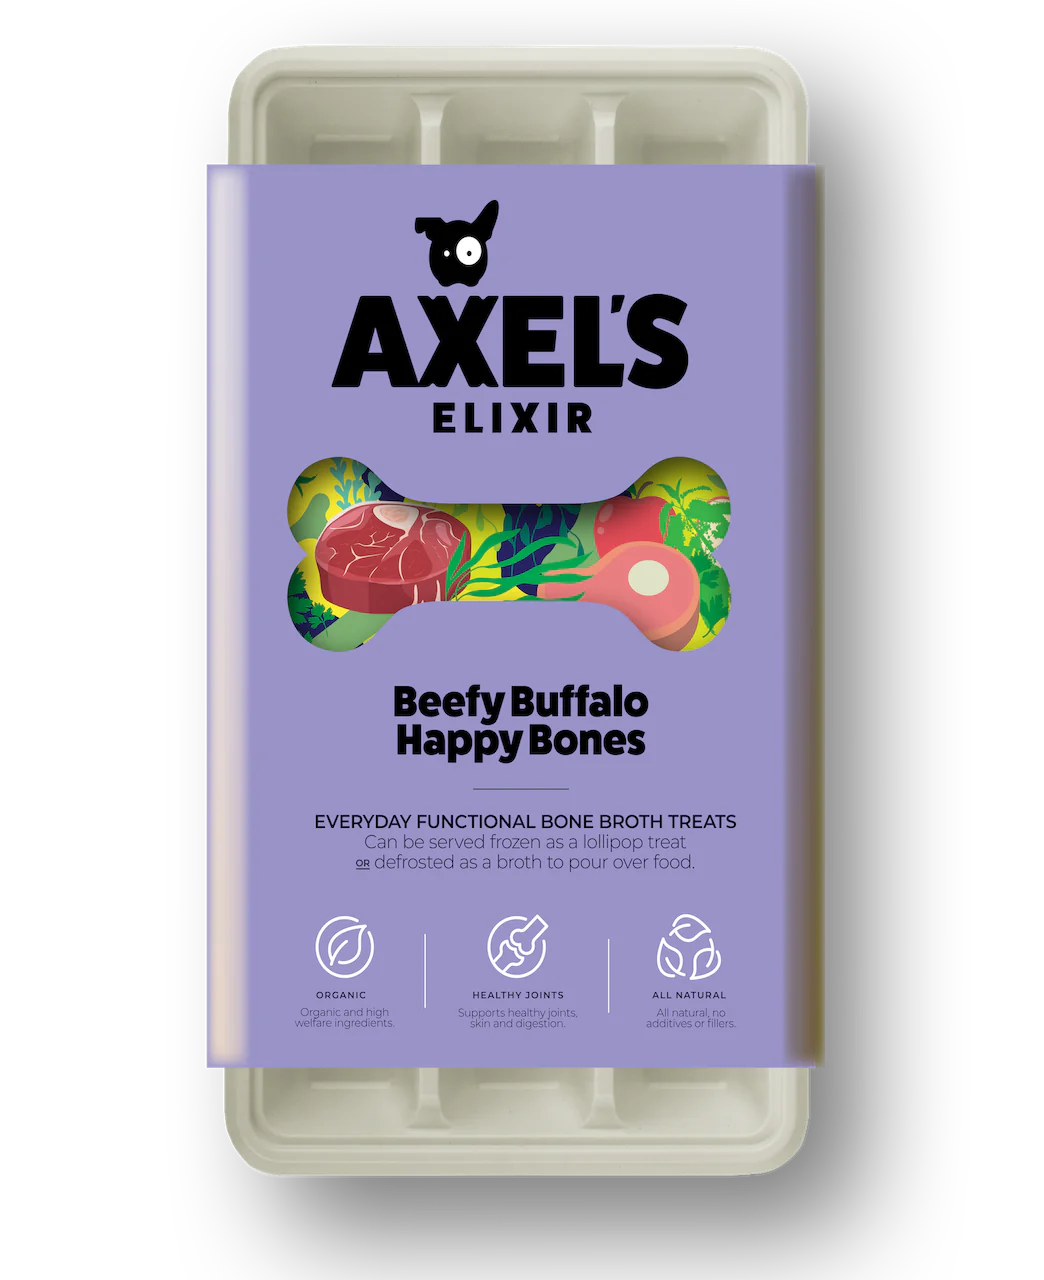 Axel’s Elixir Beefy Buffalo Happy Bones